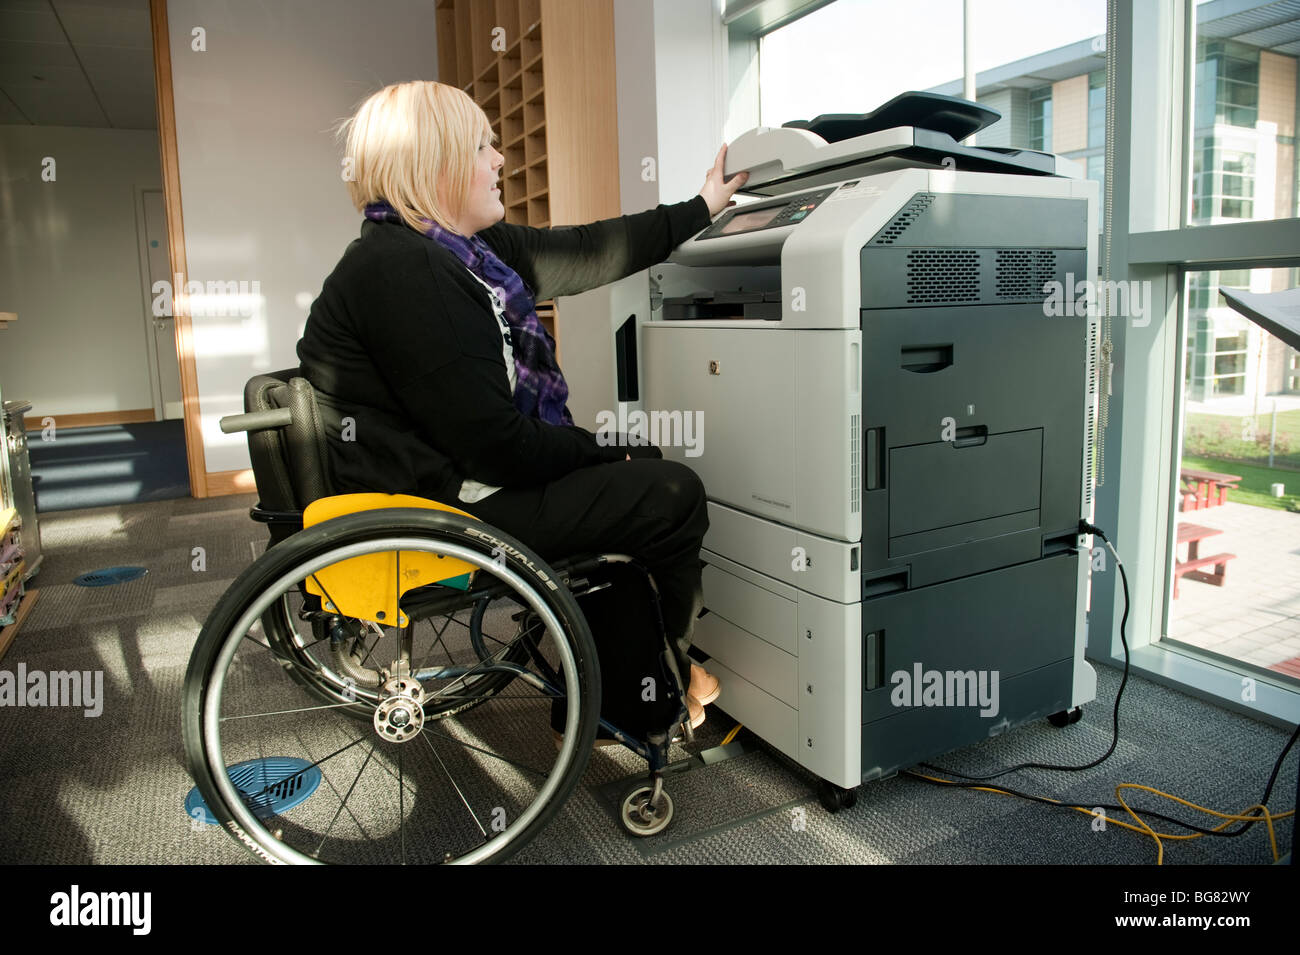 Eine junge behinderte Frau in einem Rollstuhl mit einem Kopierer Maschine in einem modernen Büro, UK Stockfoto